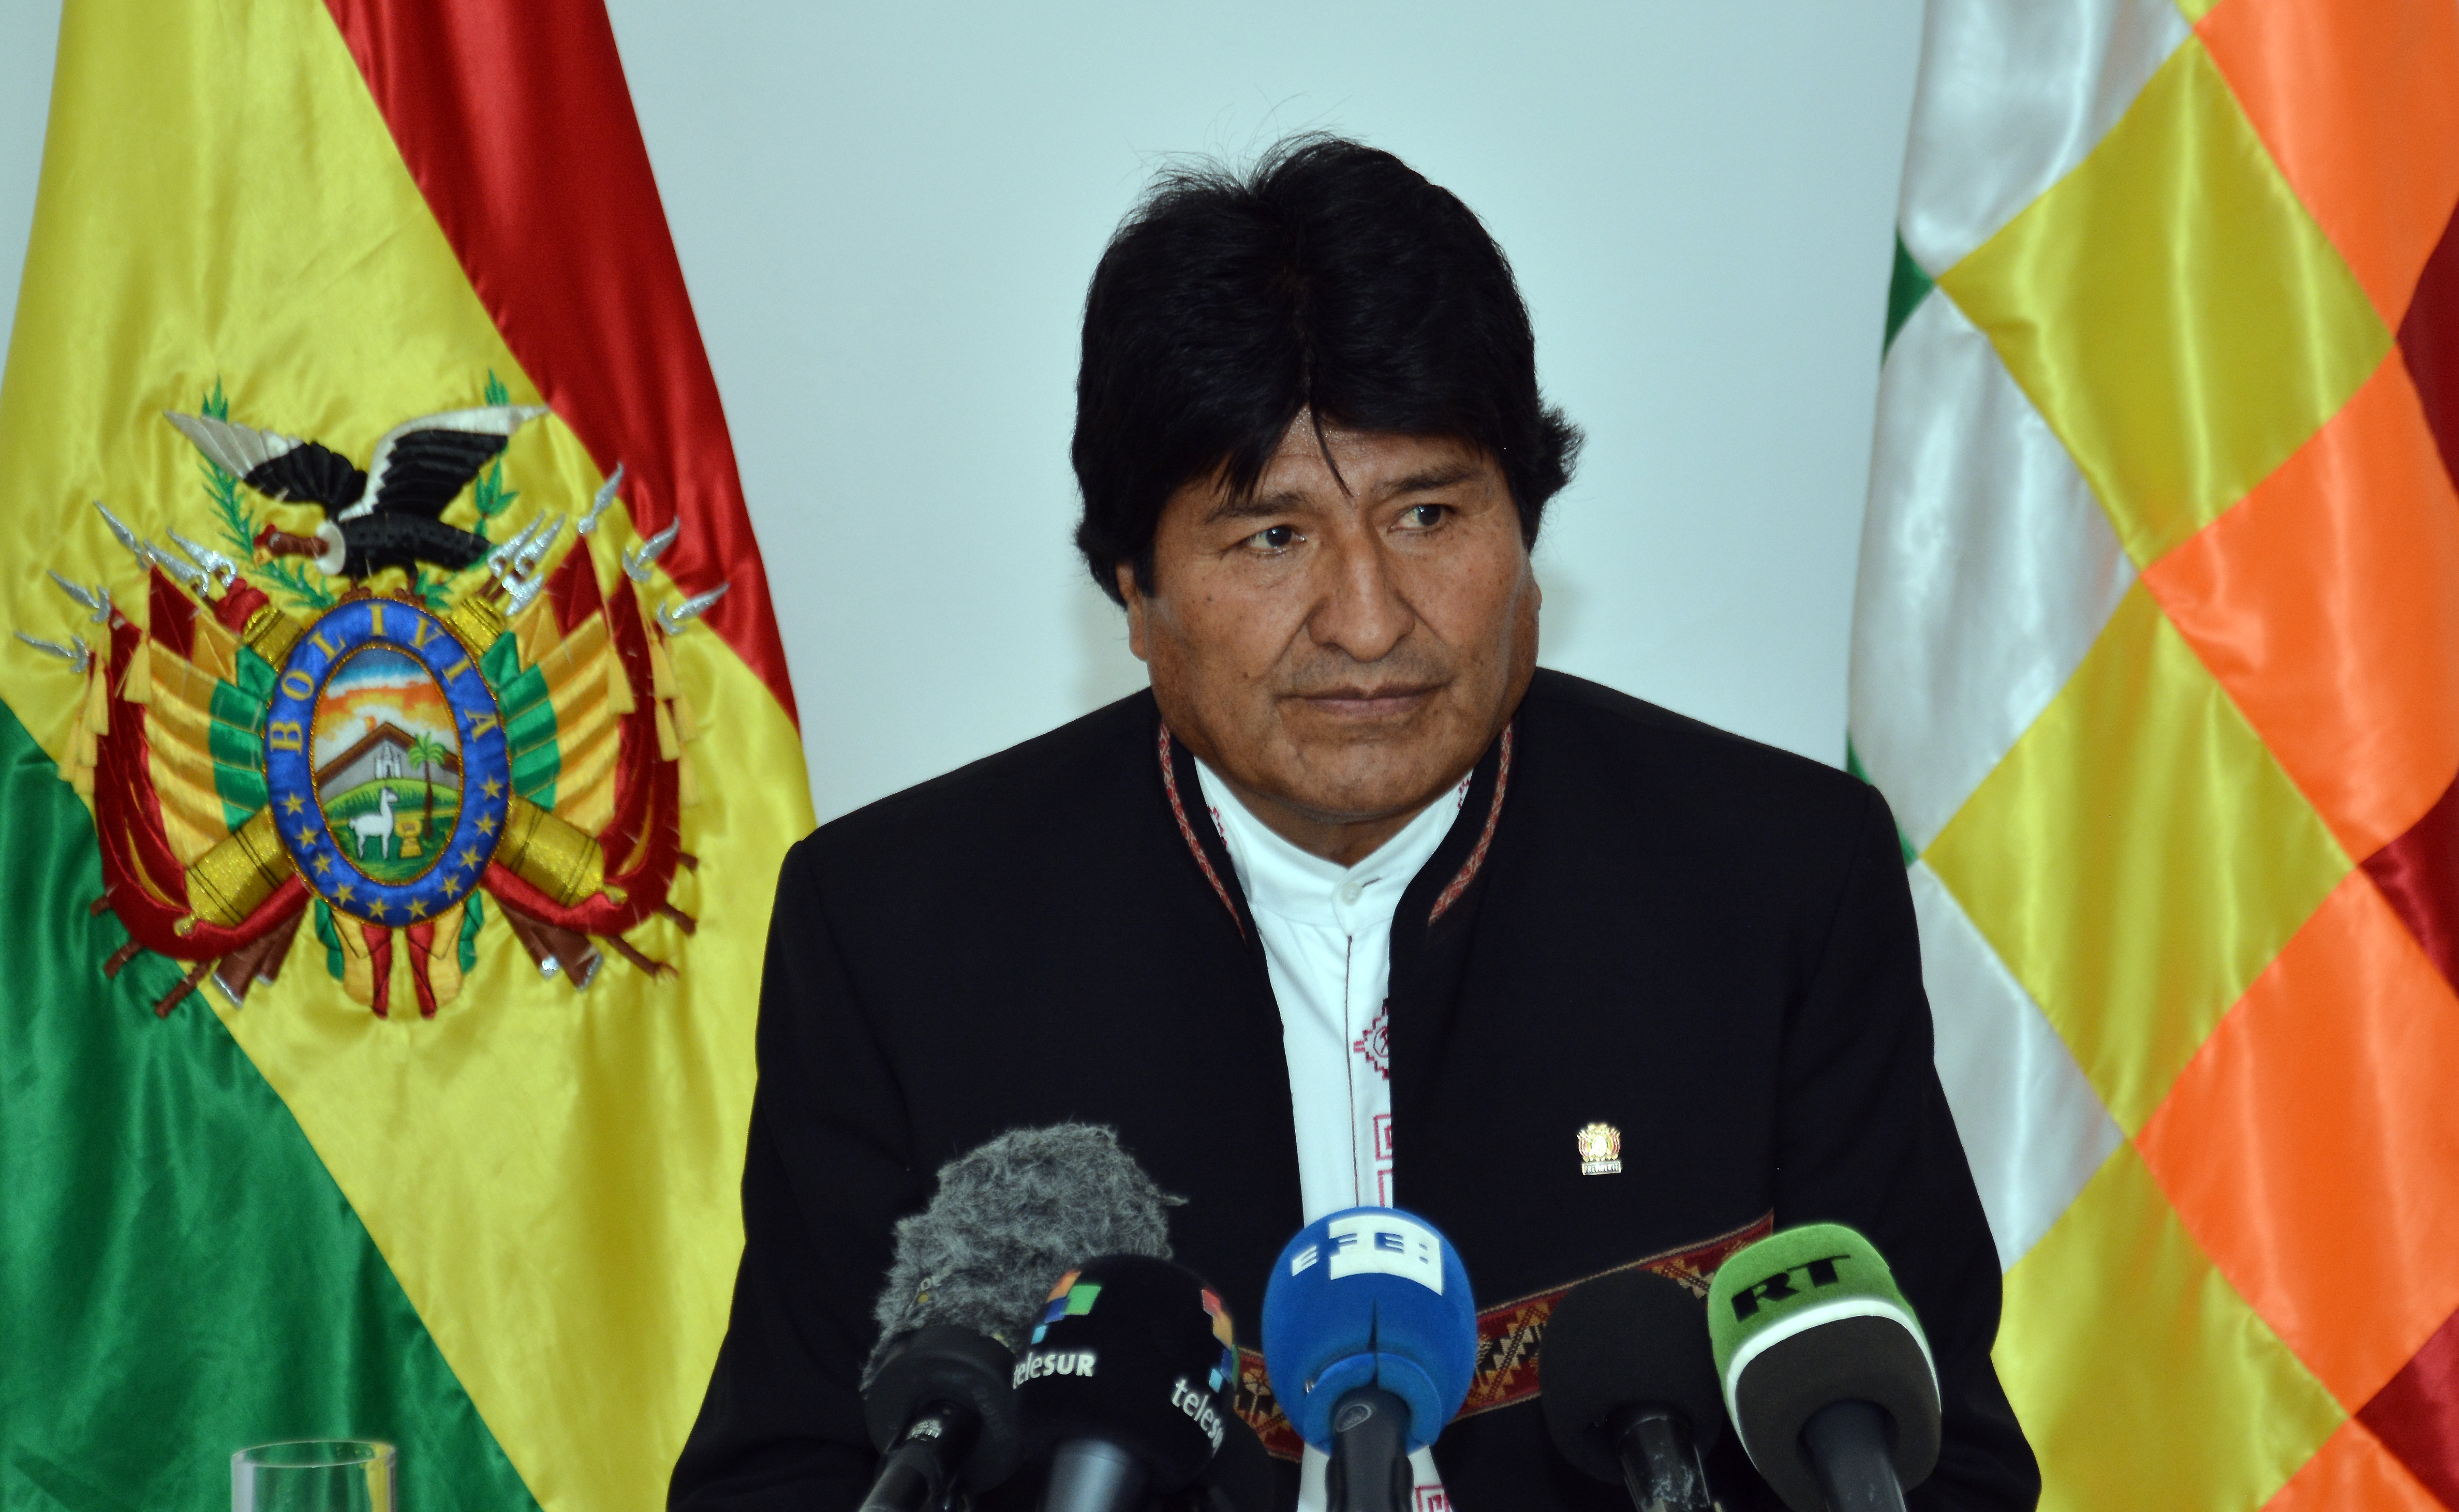 Aventaja Evo Morales elecciones presidenciales en Bolivia pero habría segunda vuelta